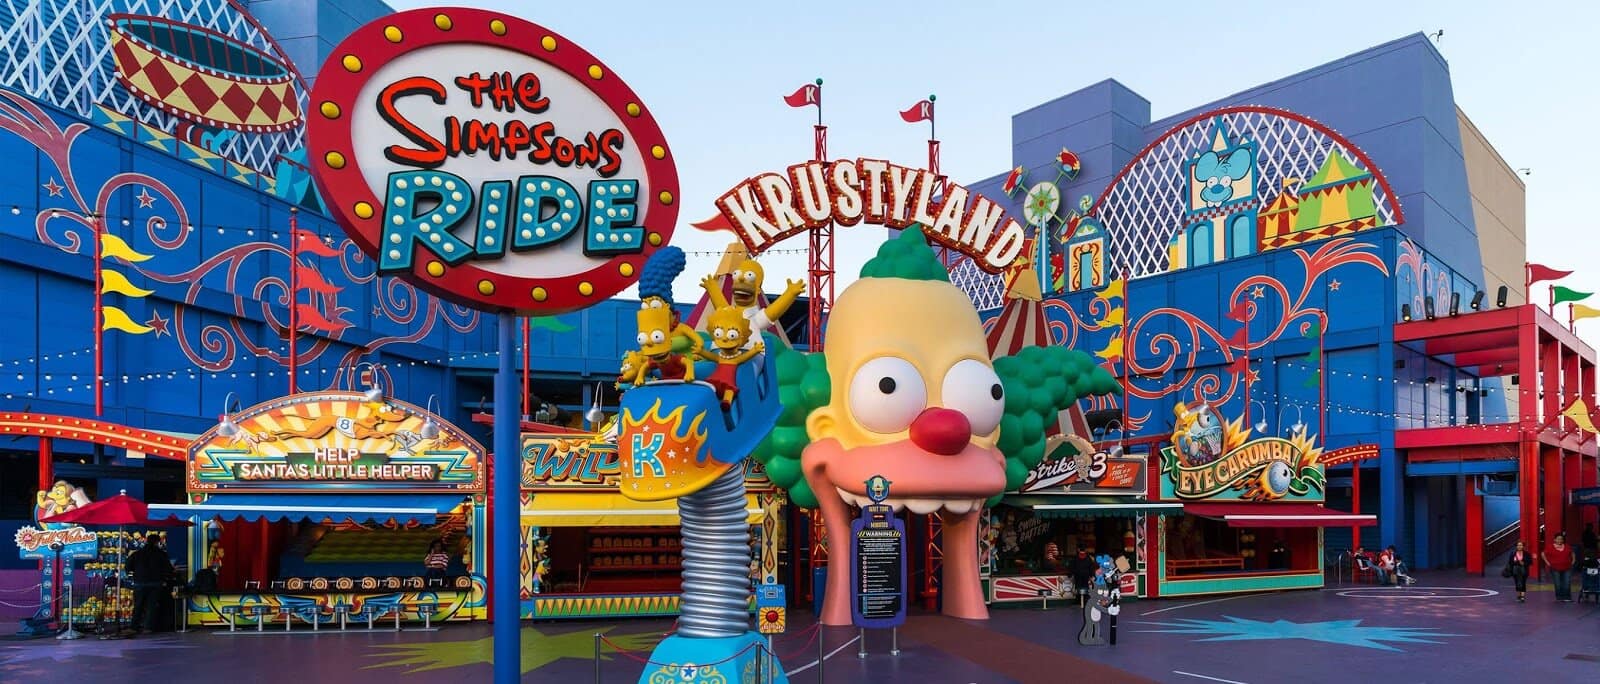 Atração dos Simpsons no parque Universal Studios em Orlando